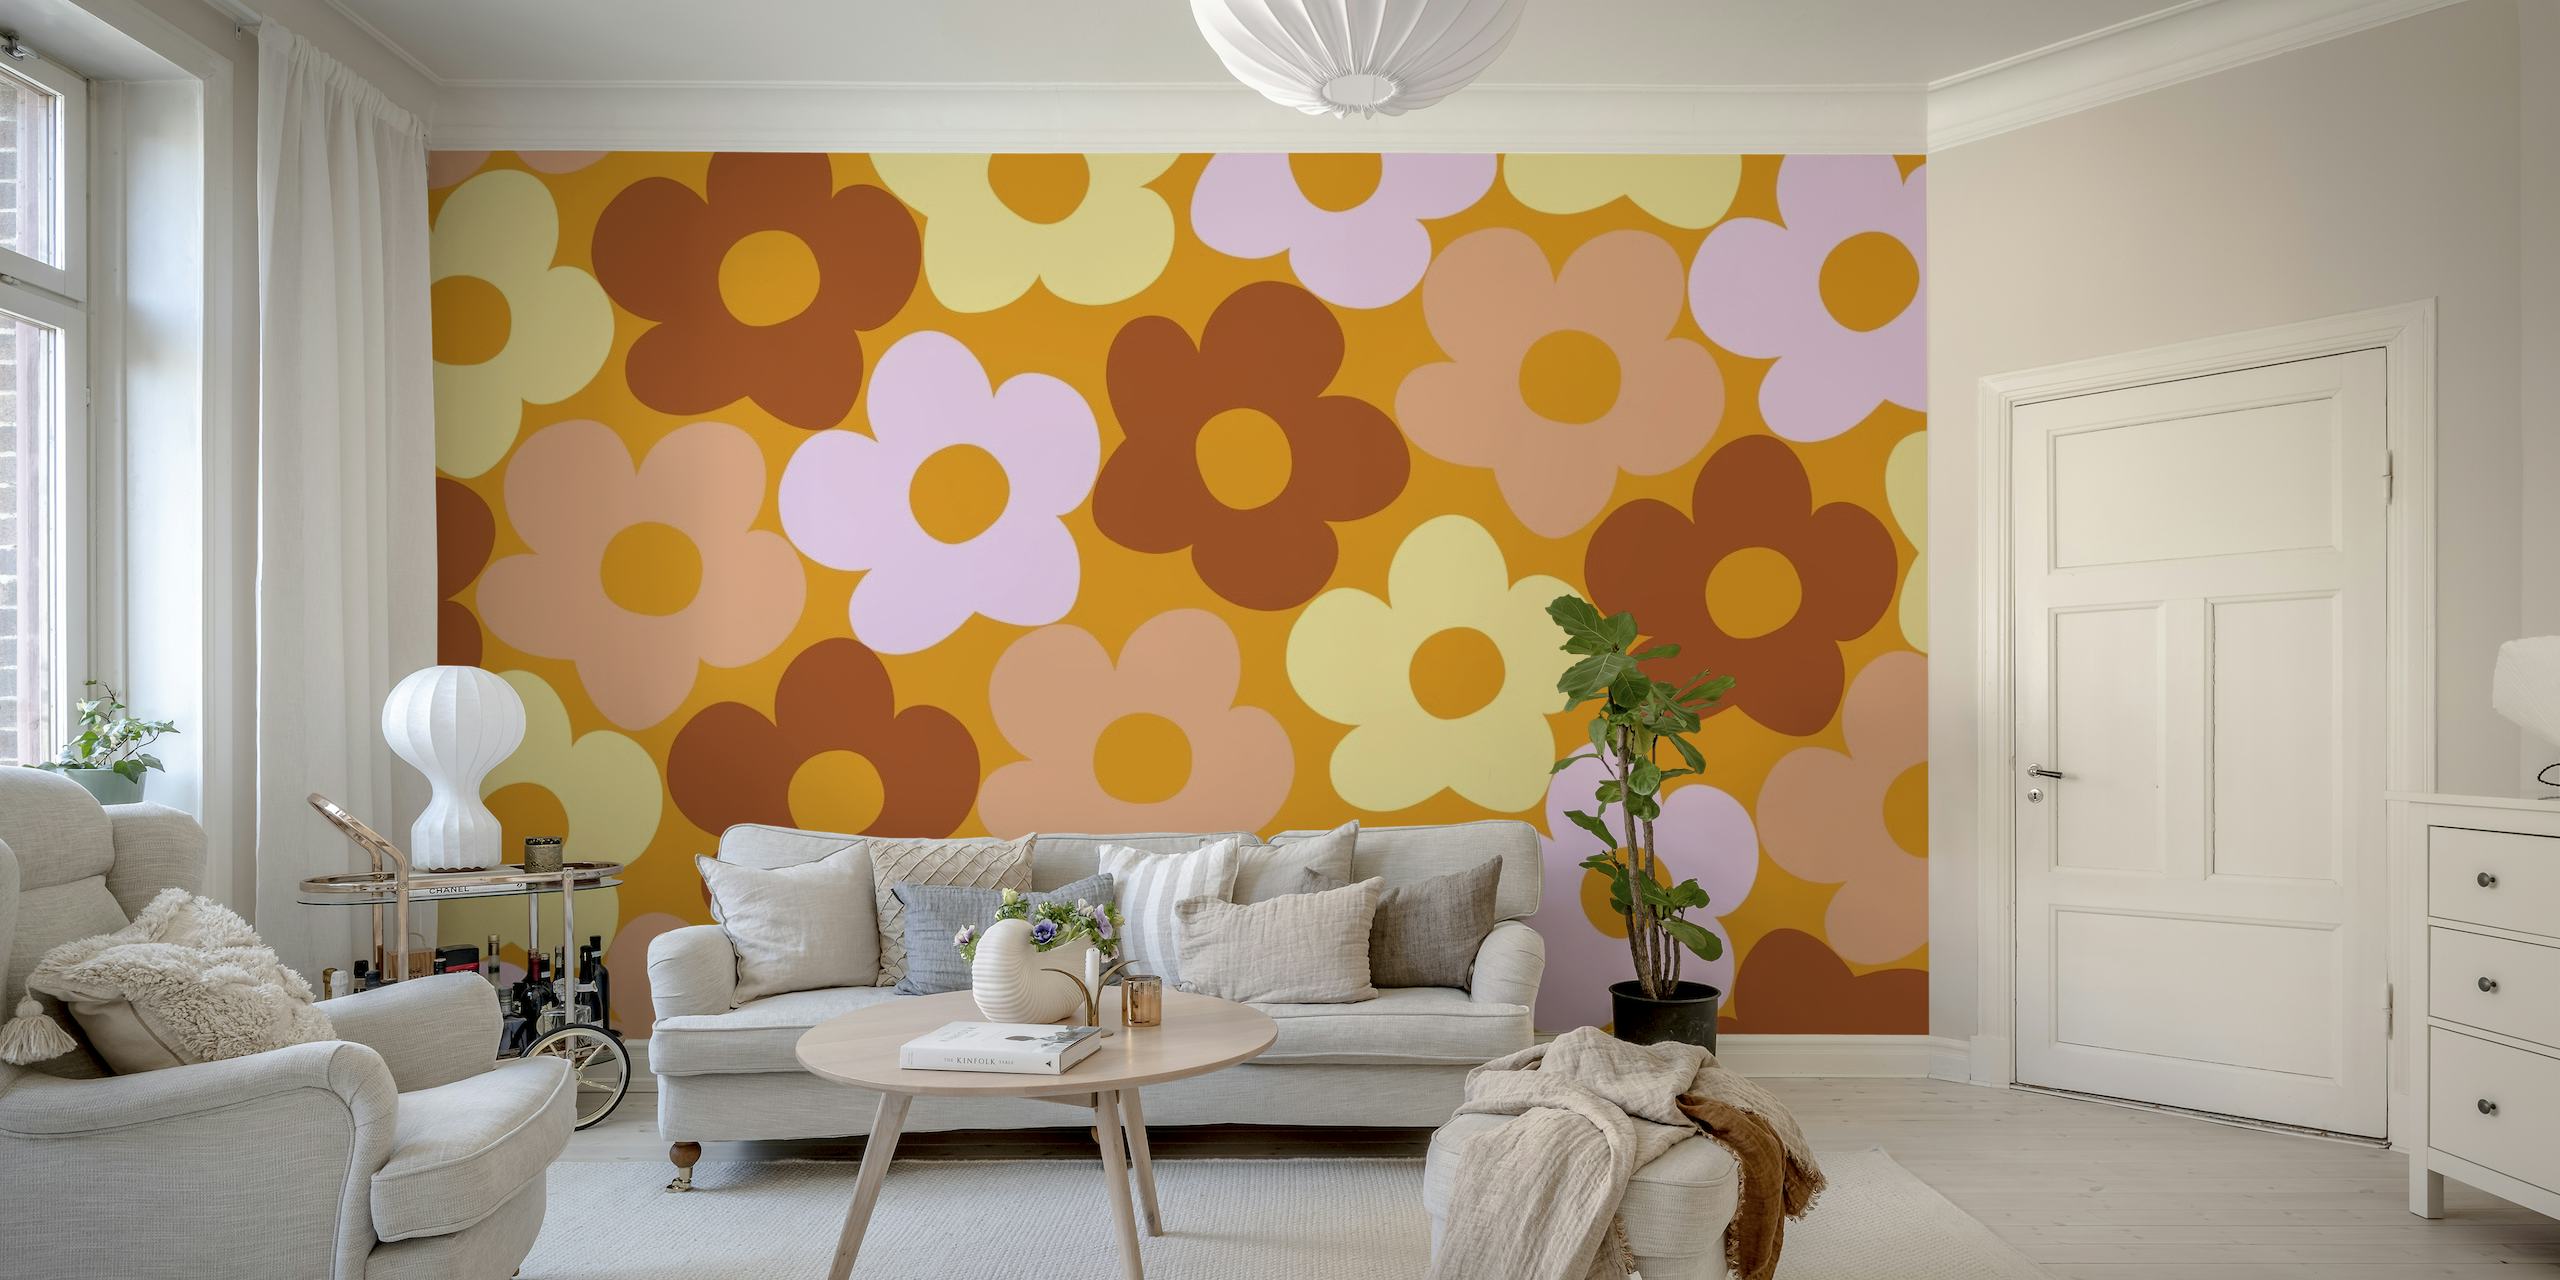 Retro-inspiriertes Wandbild mit einem Muster aus Herbst-Gänseblümchen in warmen Farbtönen auf happywall.com